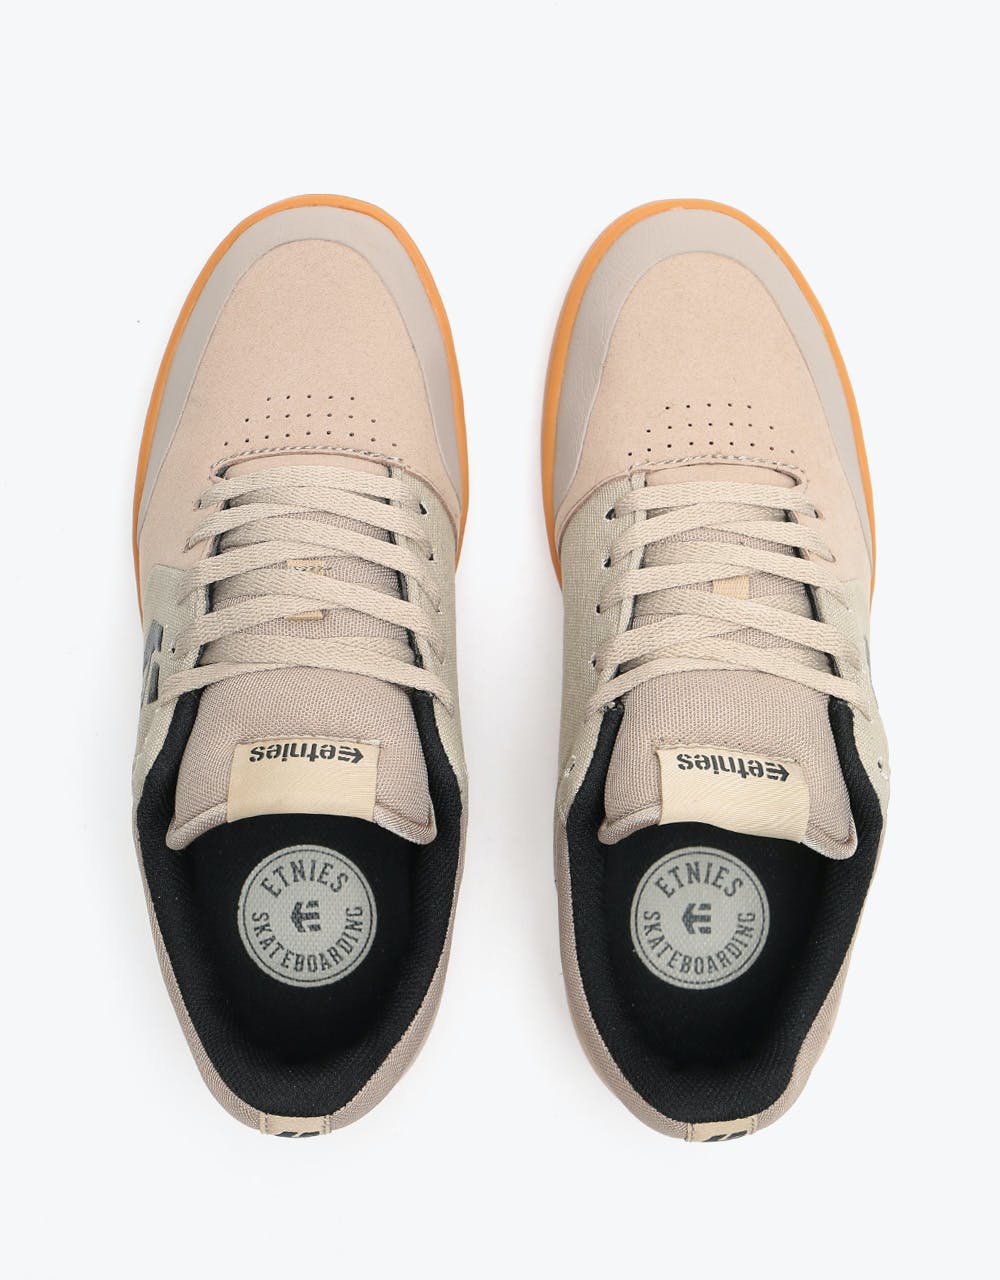 Etnies x Michelin Marana Skate Shoes - Tan/Gum